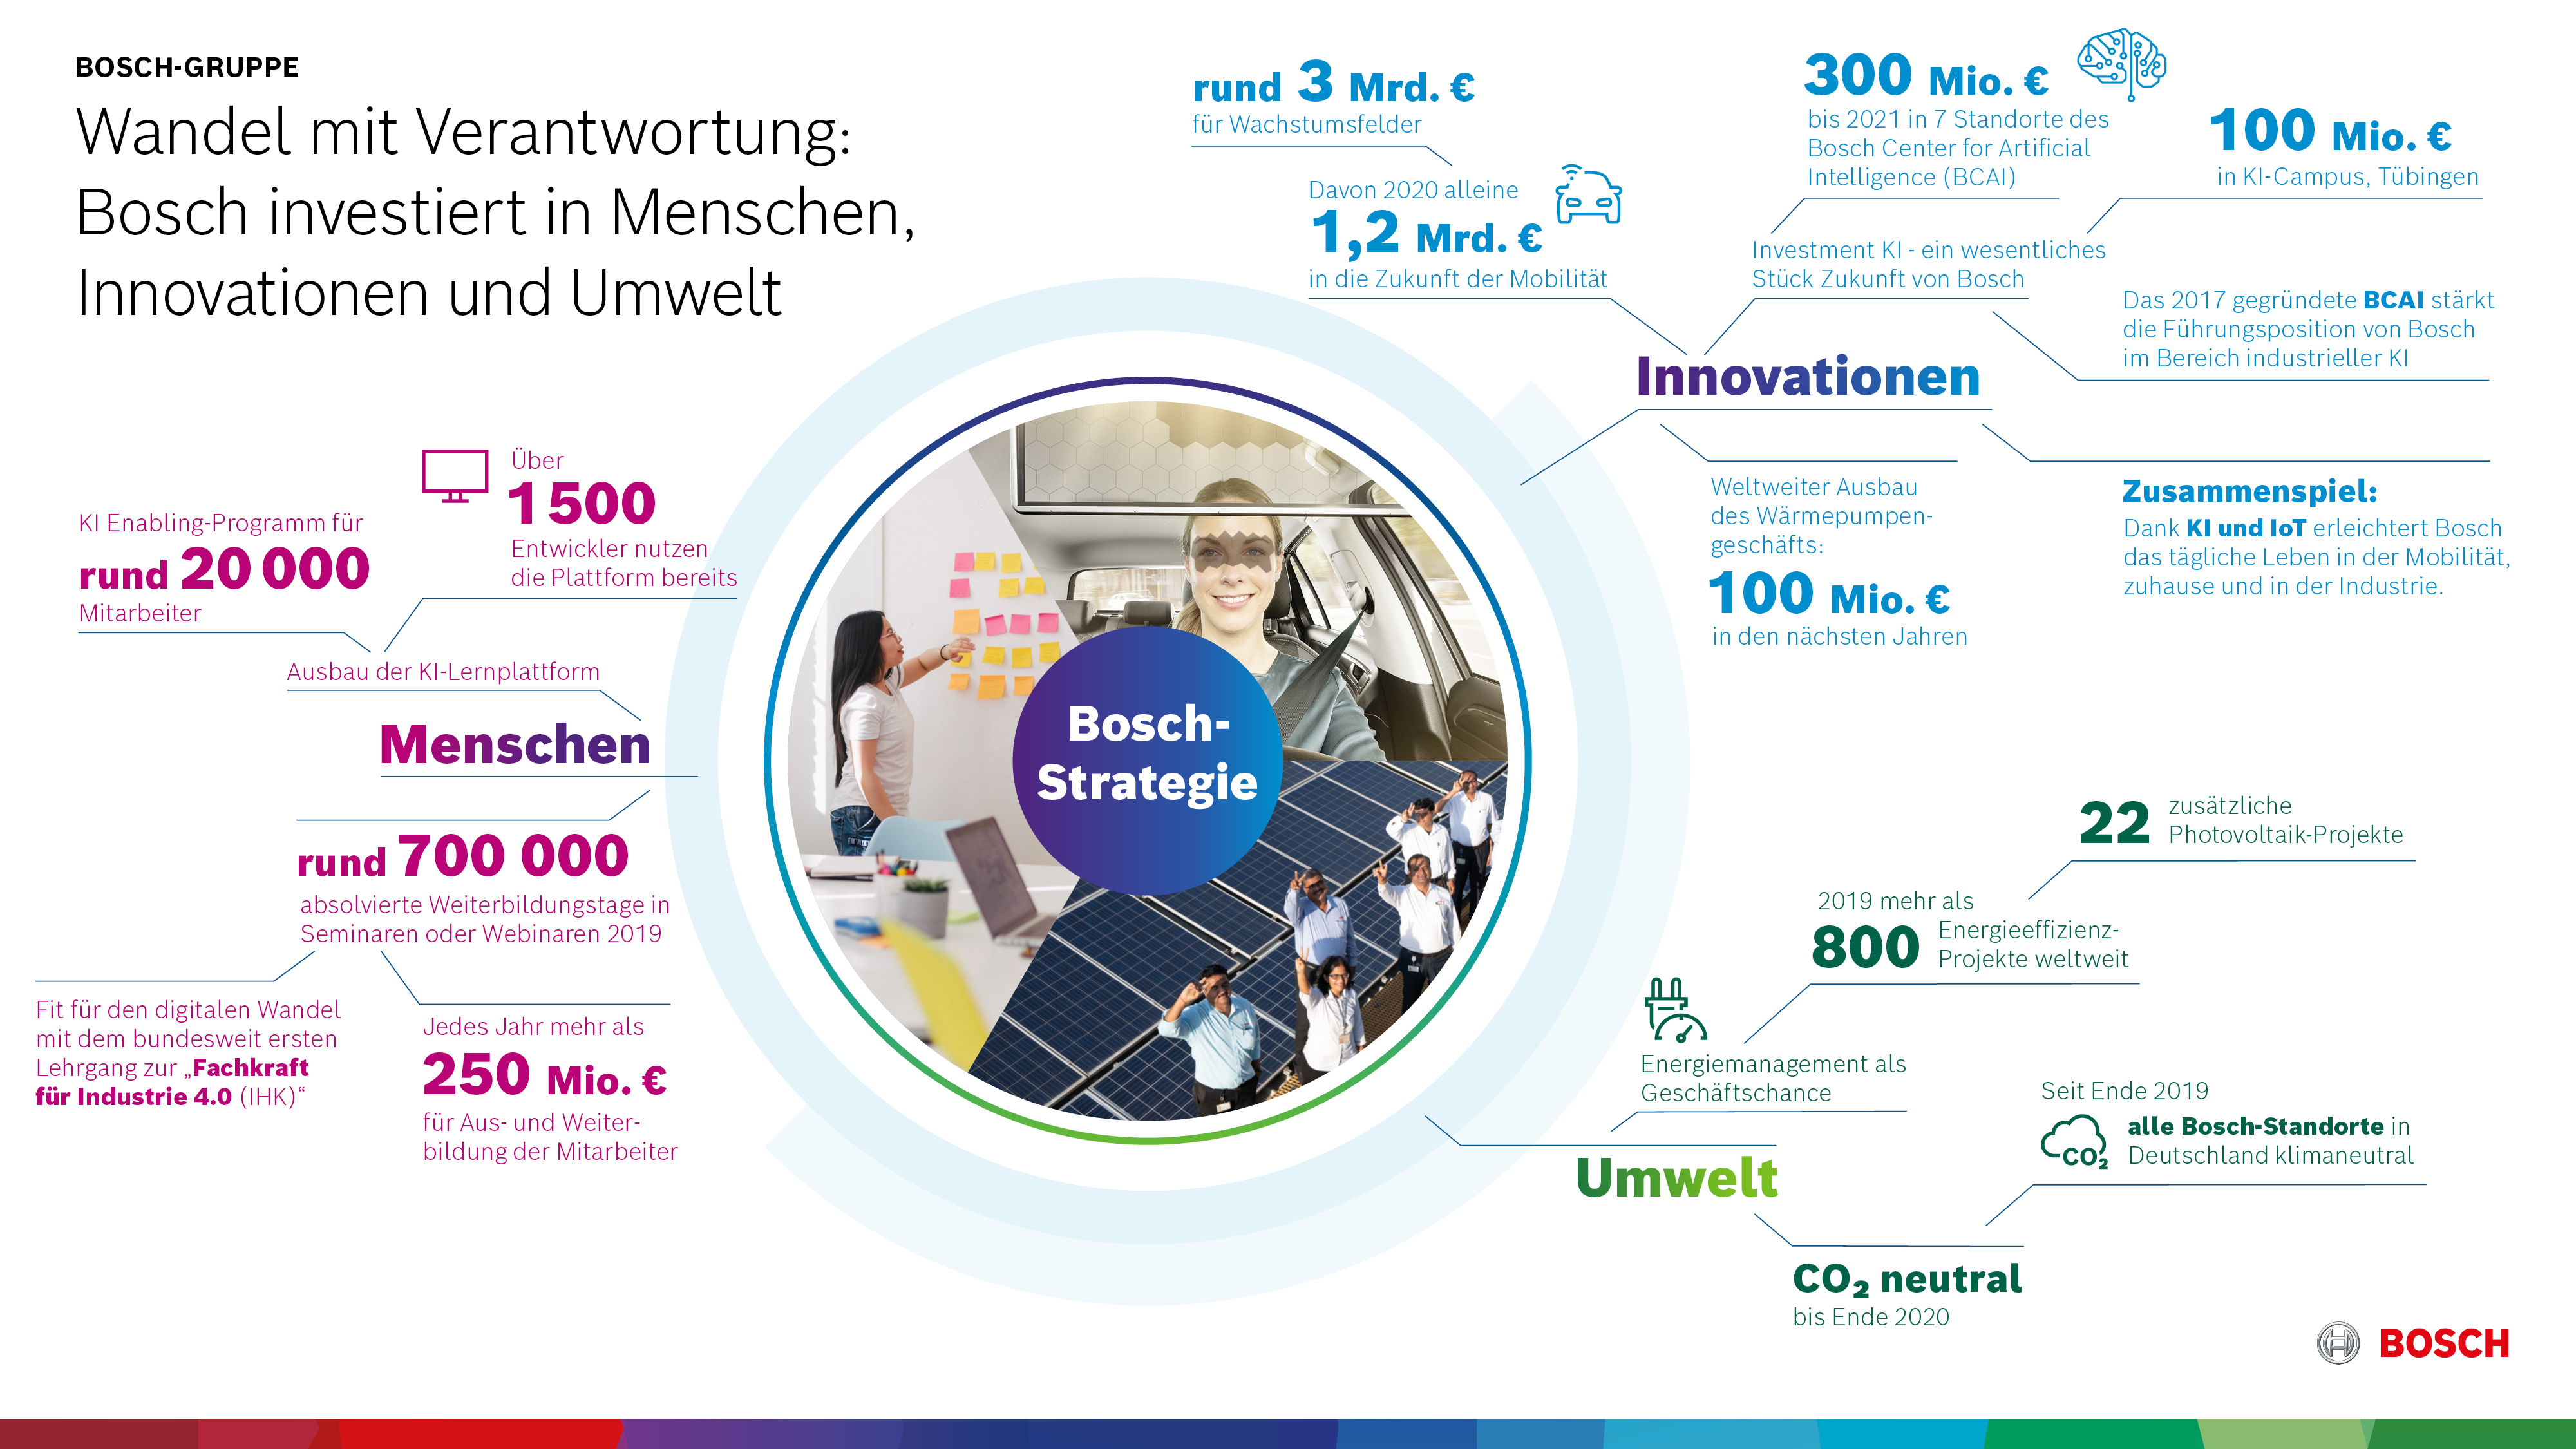 Wandel mit Verantwortung: Bosch investiert in Menschen, Innovationen und Umwelt